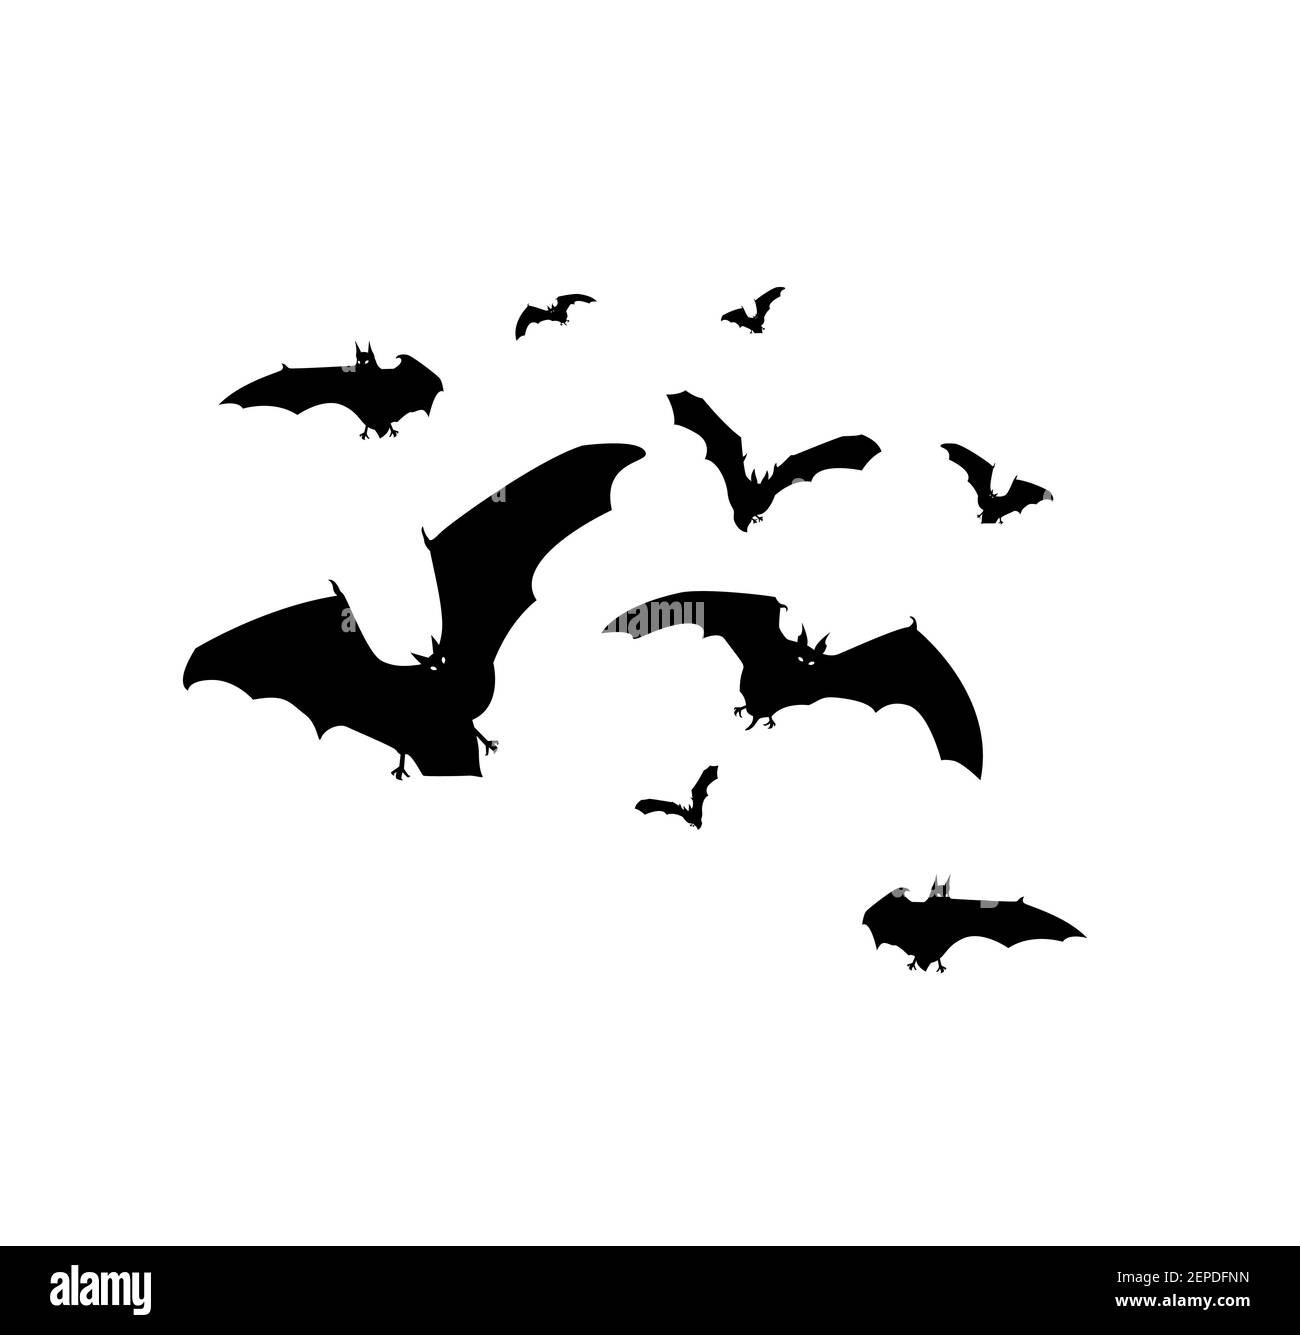 Des chauves-souris volent autour d'une simple illustration vectorielle d'arrière-plan Illustration de Vecteur